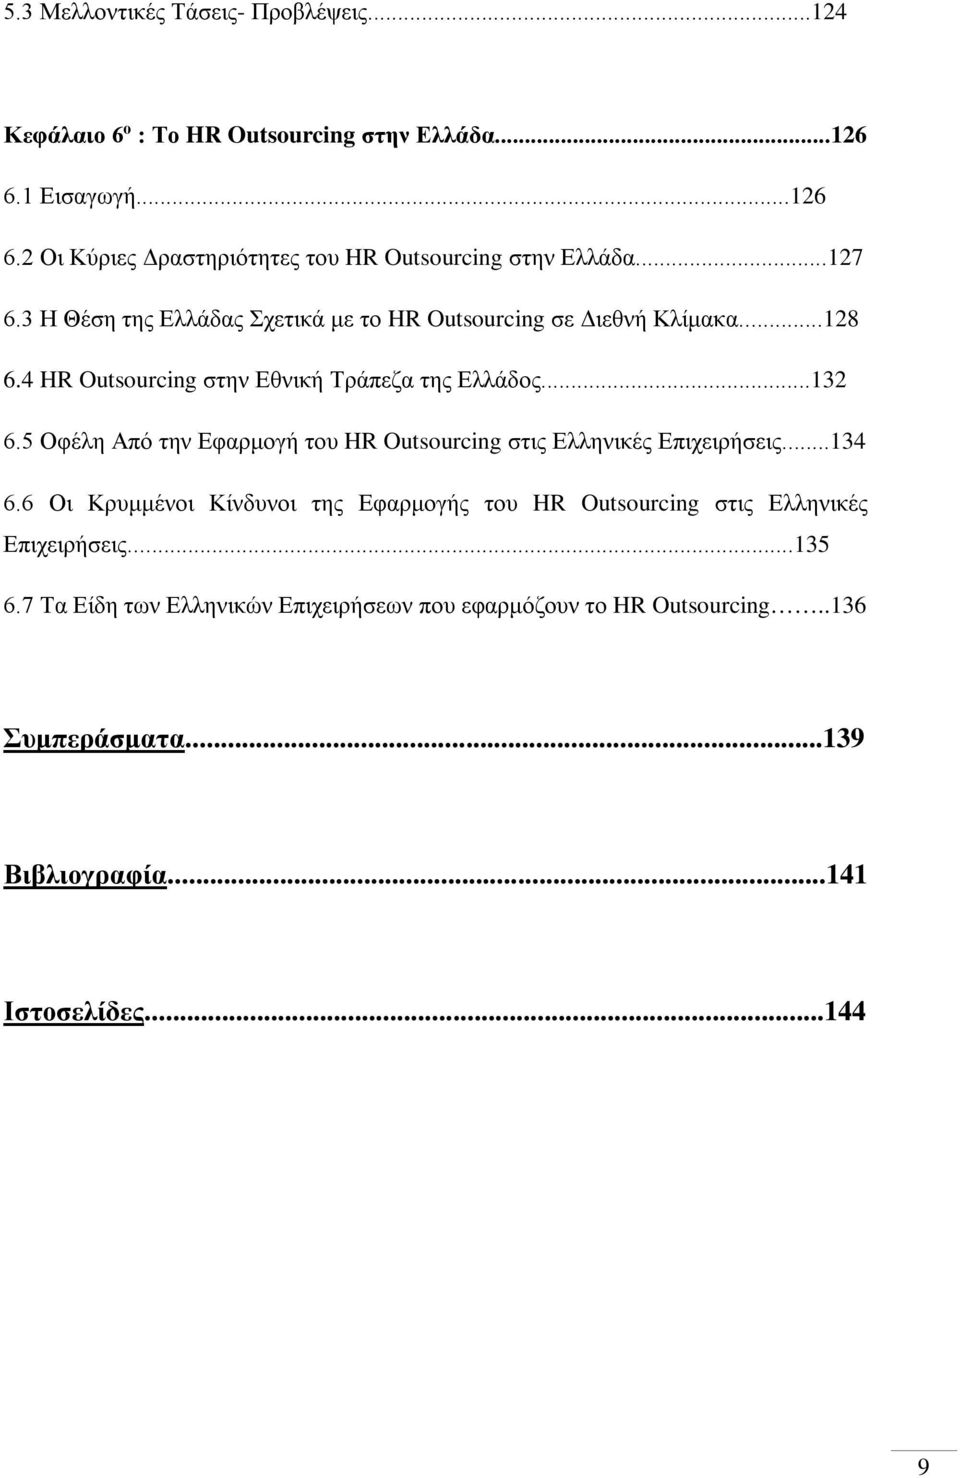 5 Οφέλη Από την Εφαρμογή του HR Outsourcing στις Ελληνικές Επιχειρήσεις...134 6.